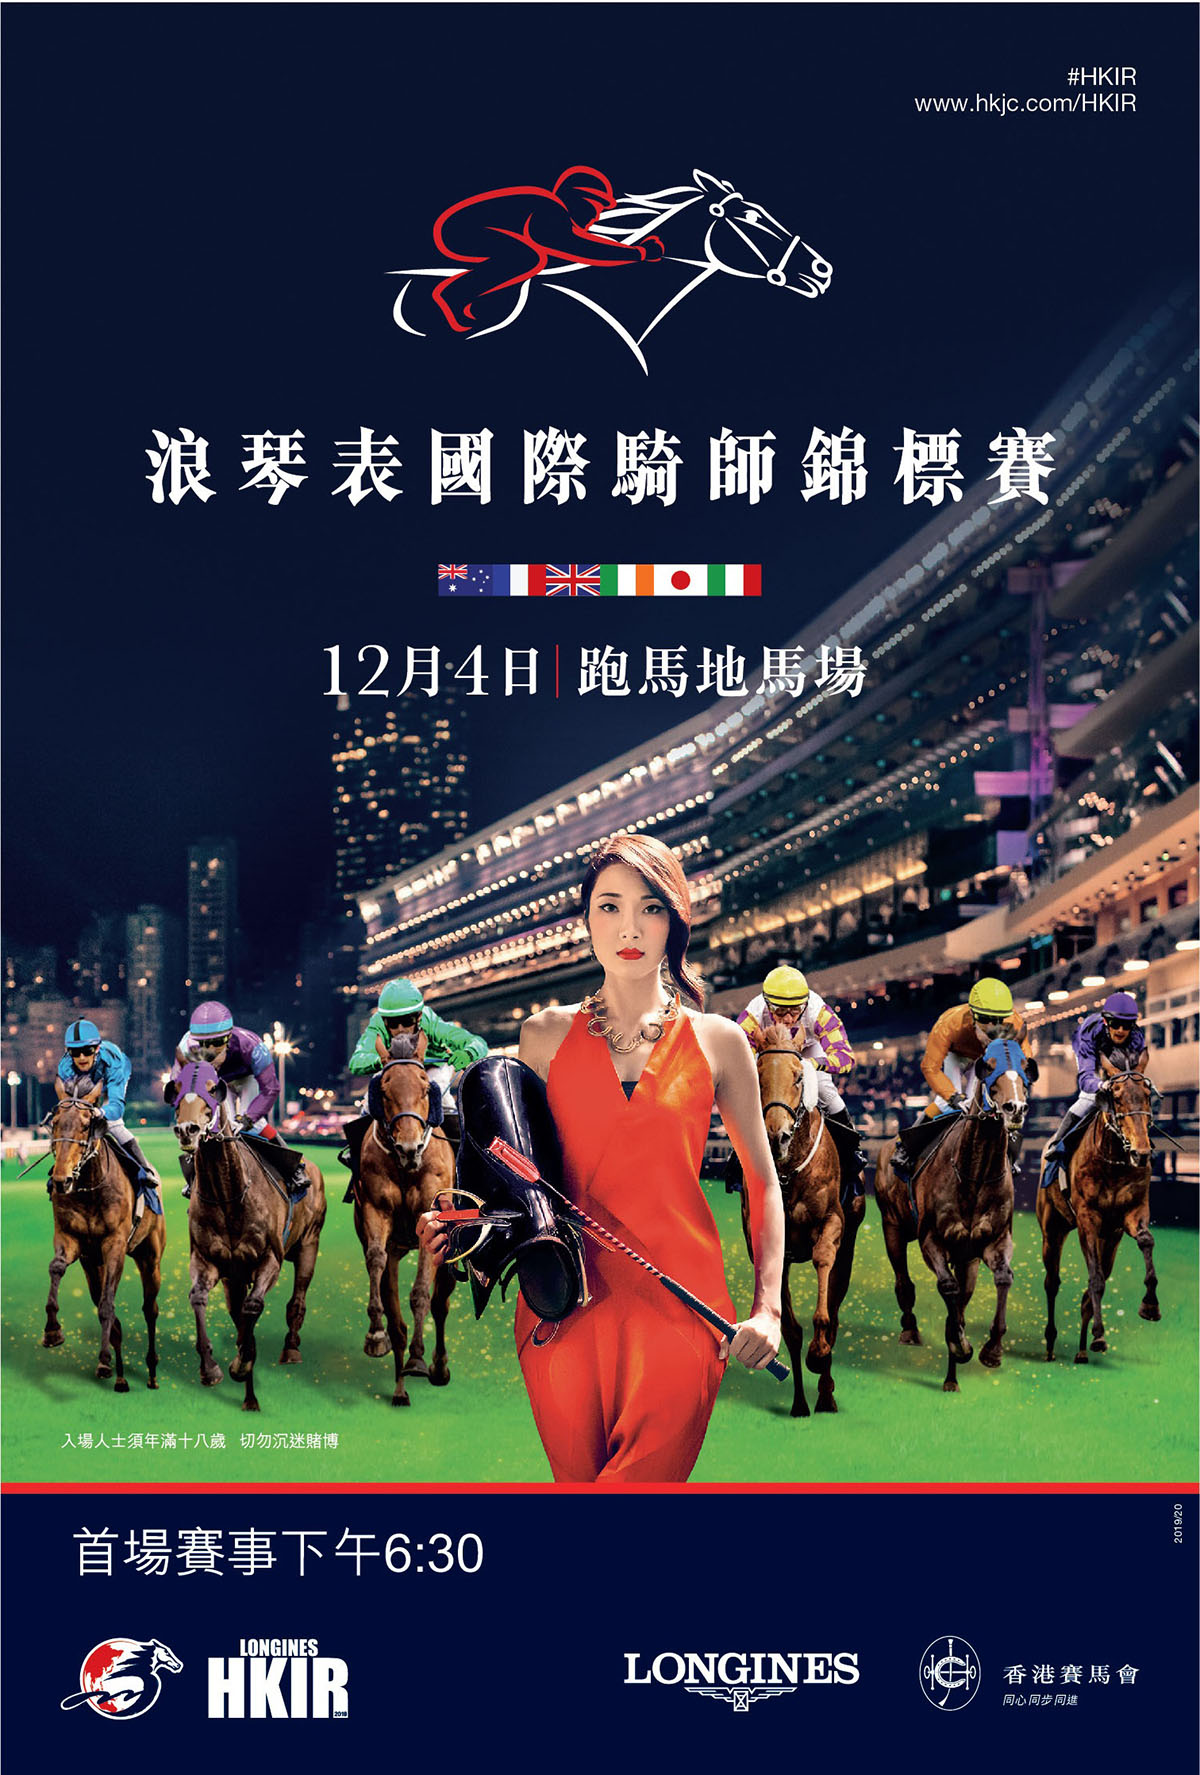 本週三(12月4日)跑馬地馬場上演第22屆「浪琴表國際騎師錦標賽」。